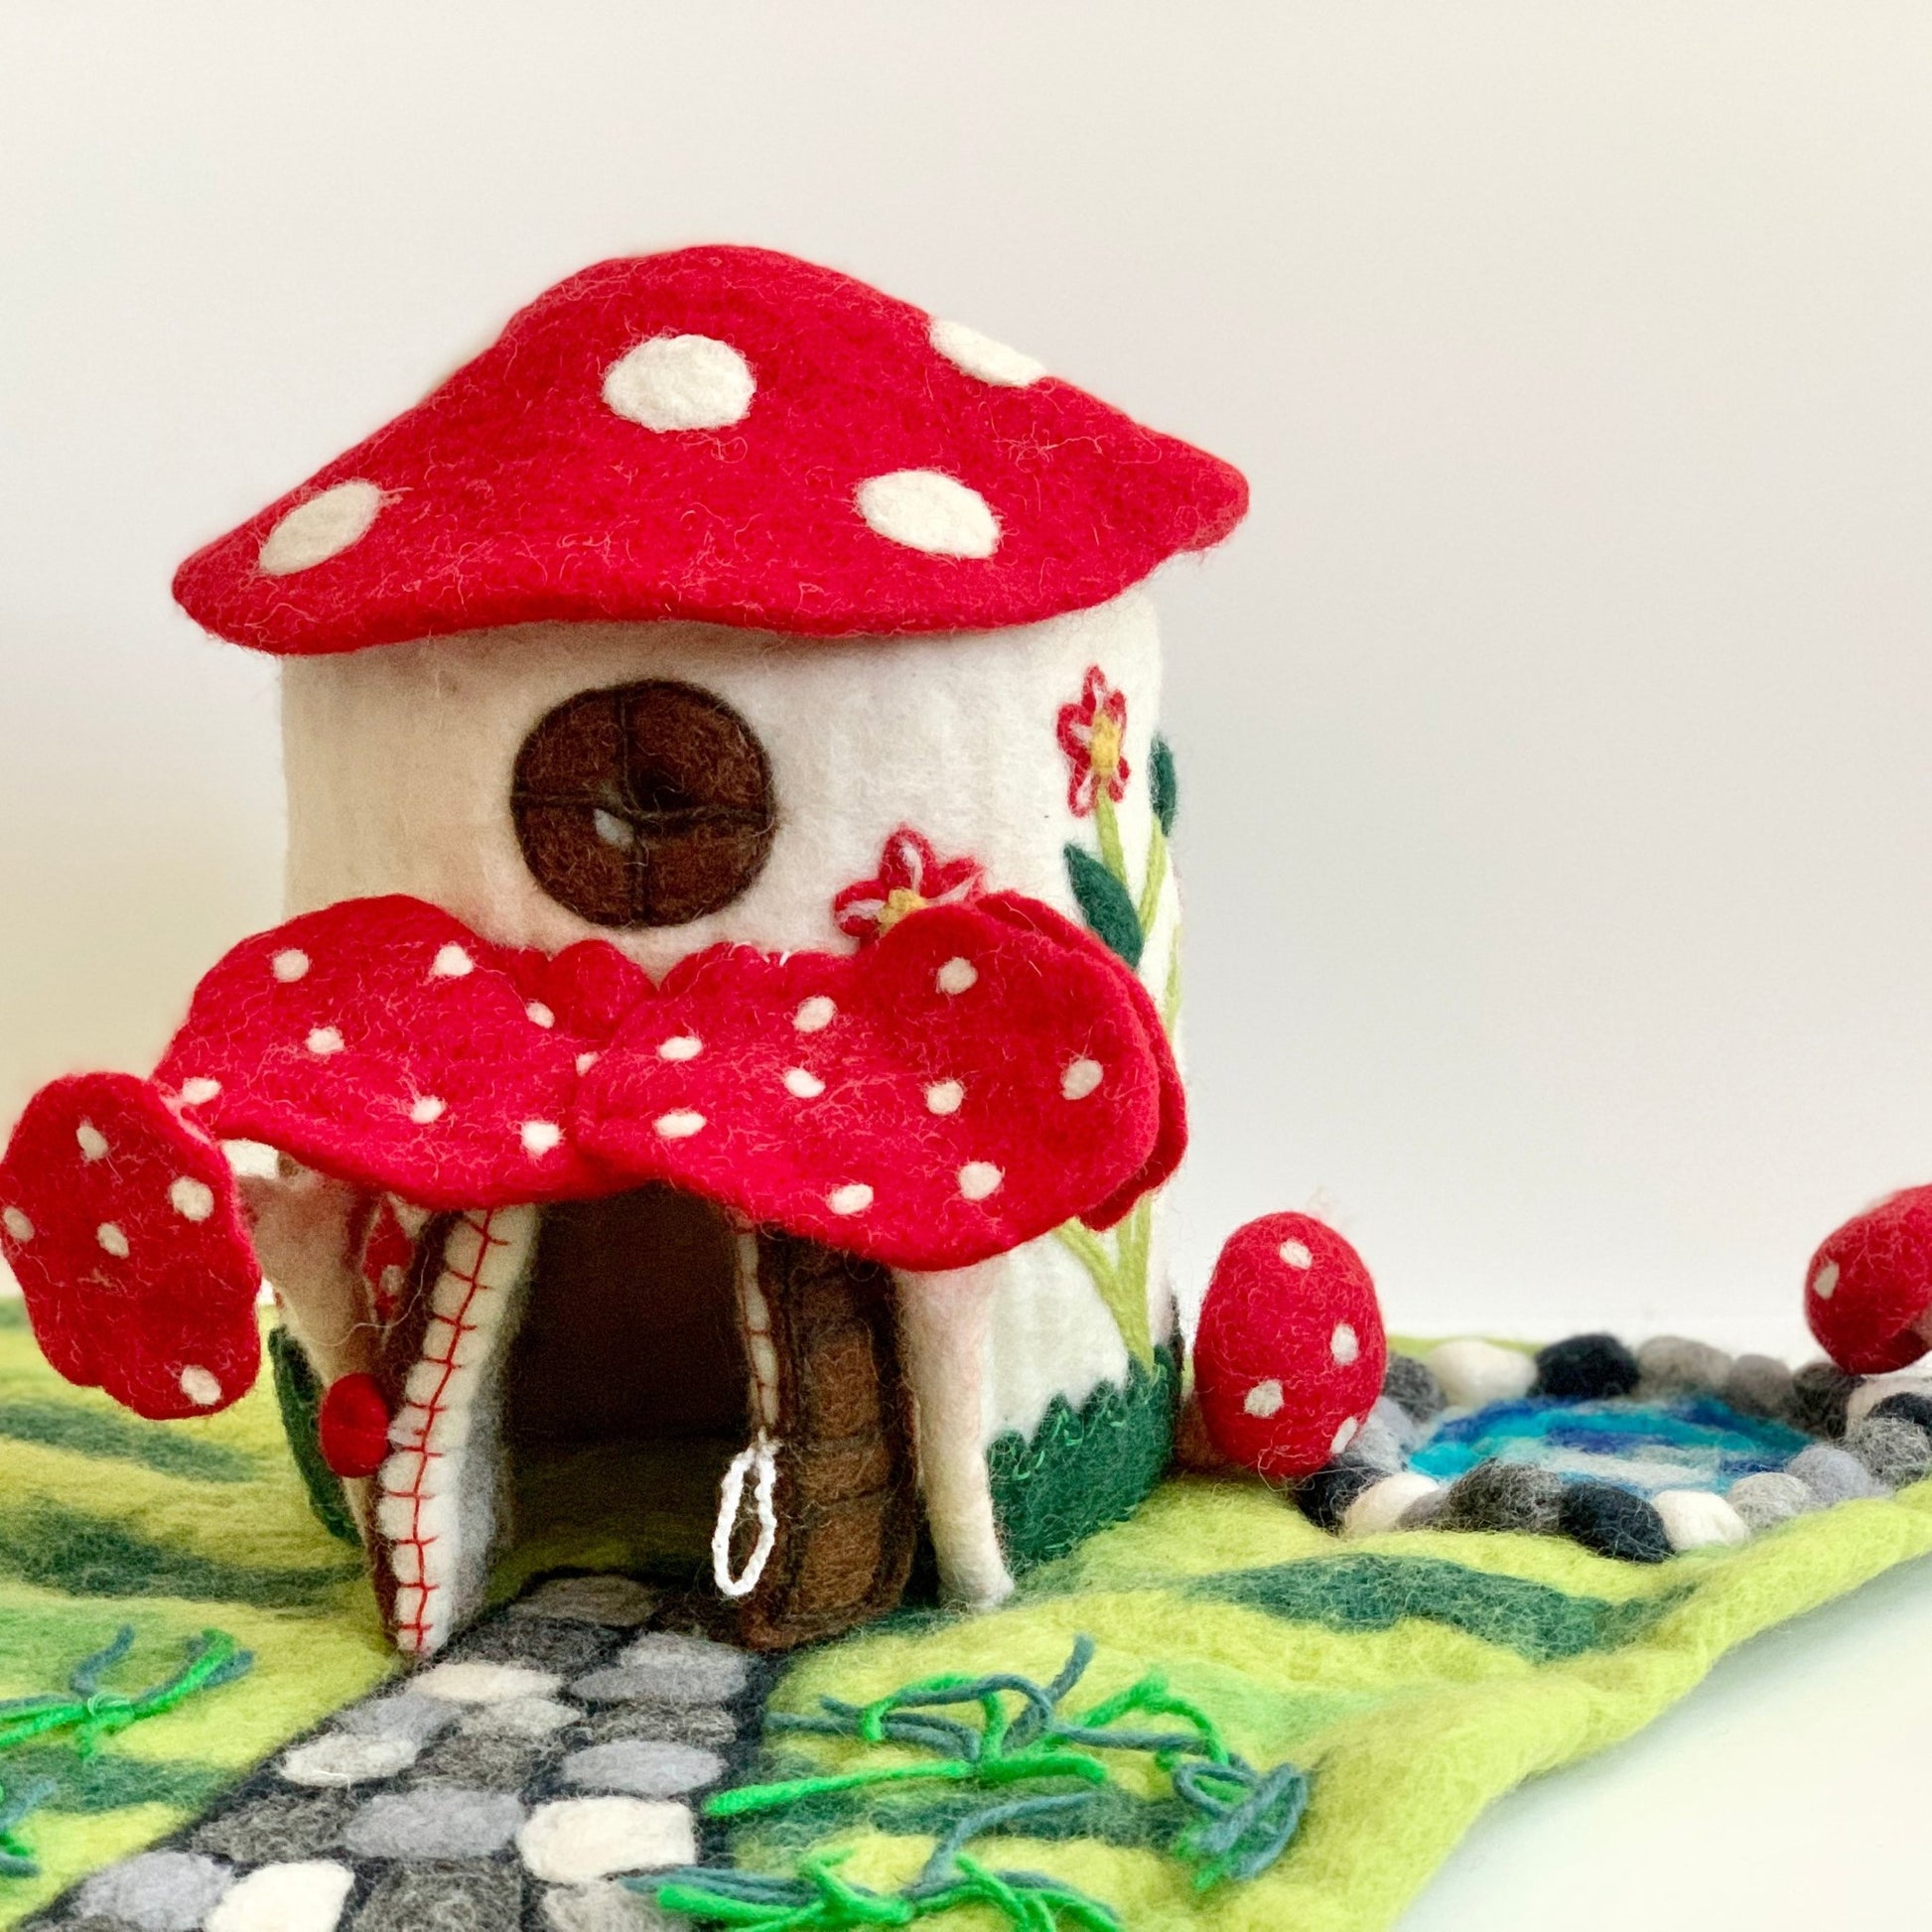 waldorf mushroom fairy house